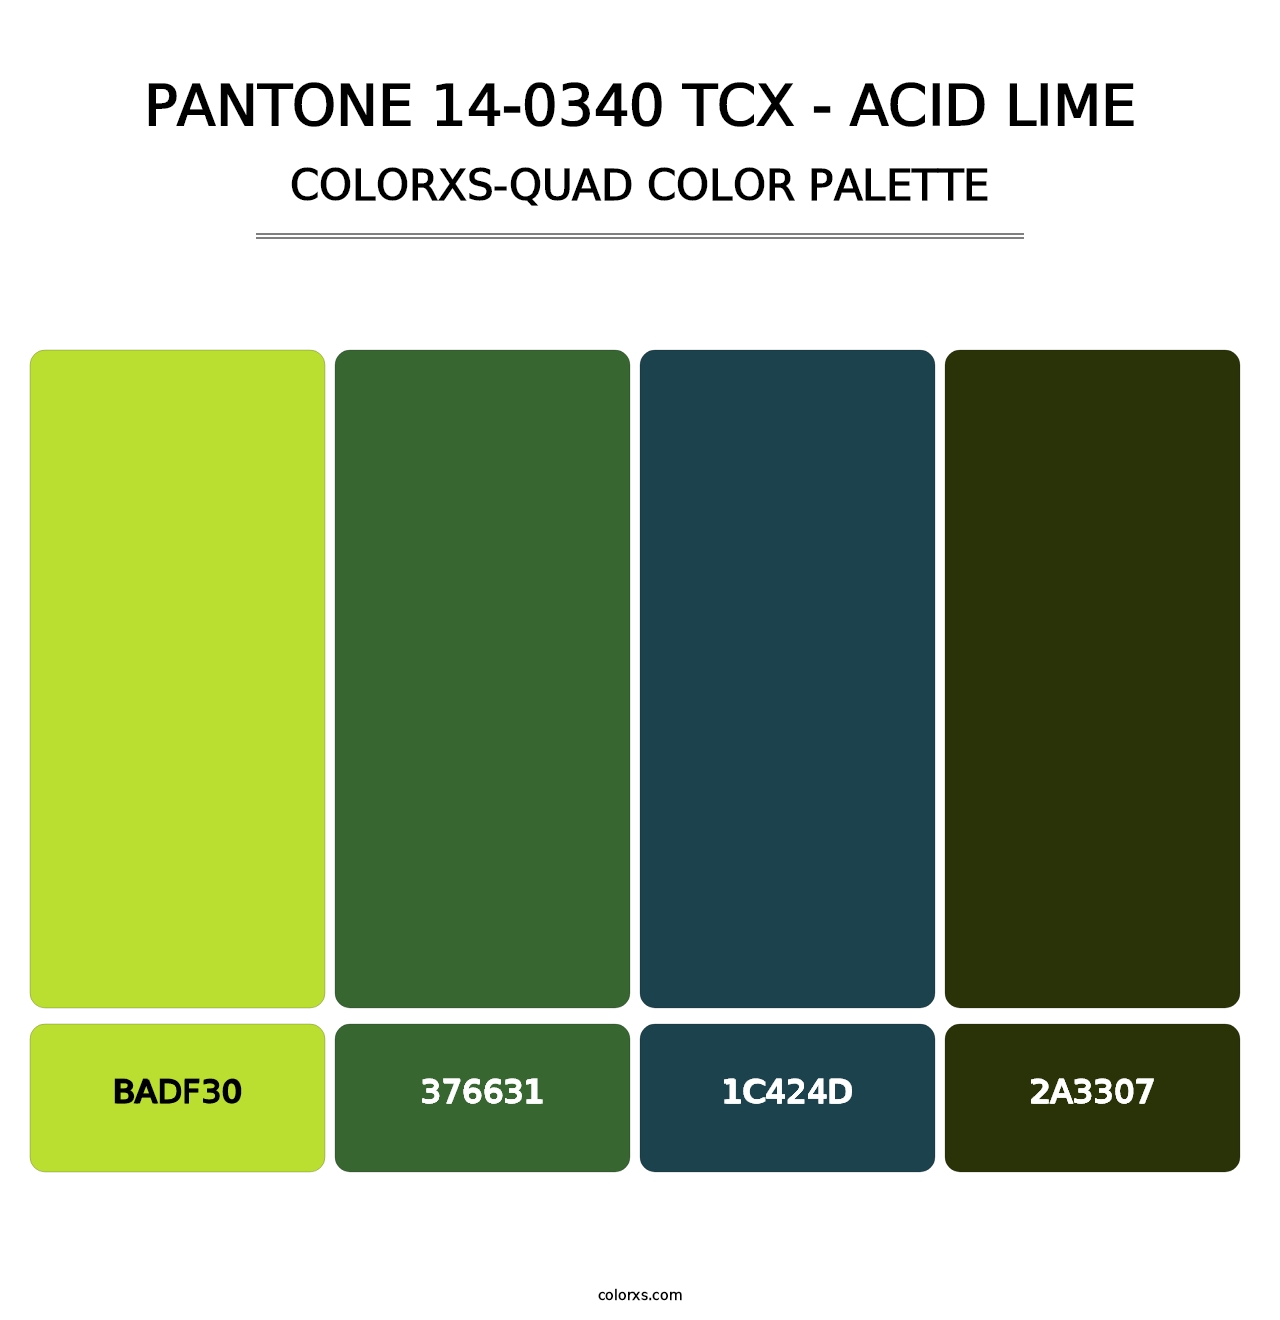 PANTONE 14-0340 TCX - Acid Lime - Colorxs Quad Palette